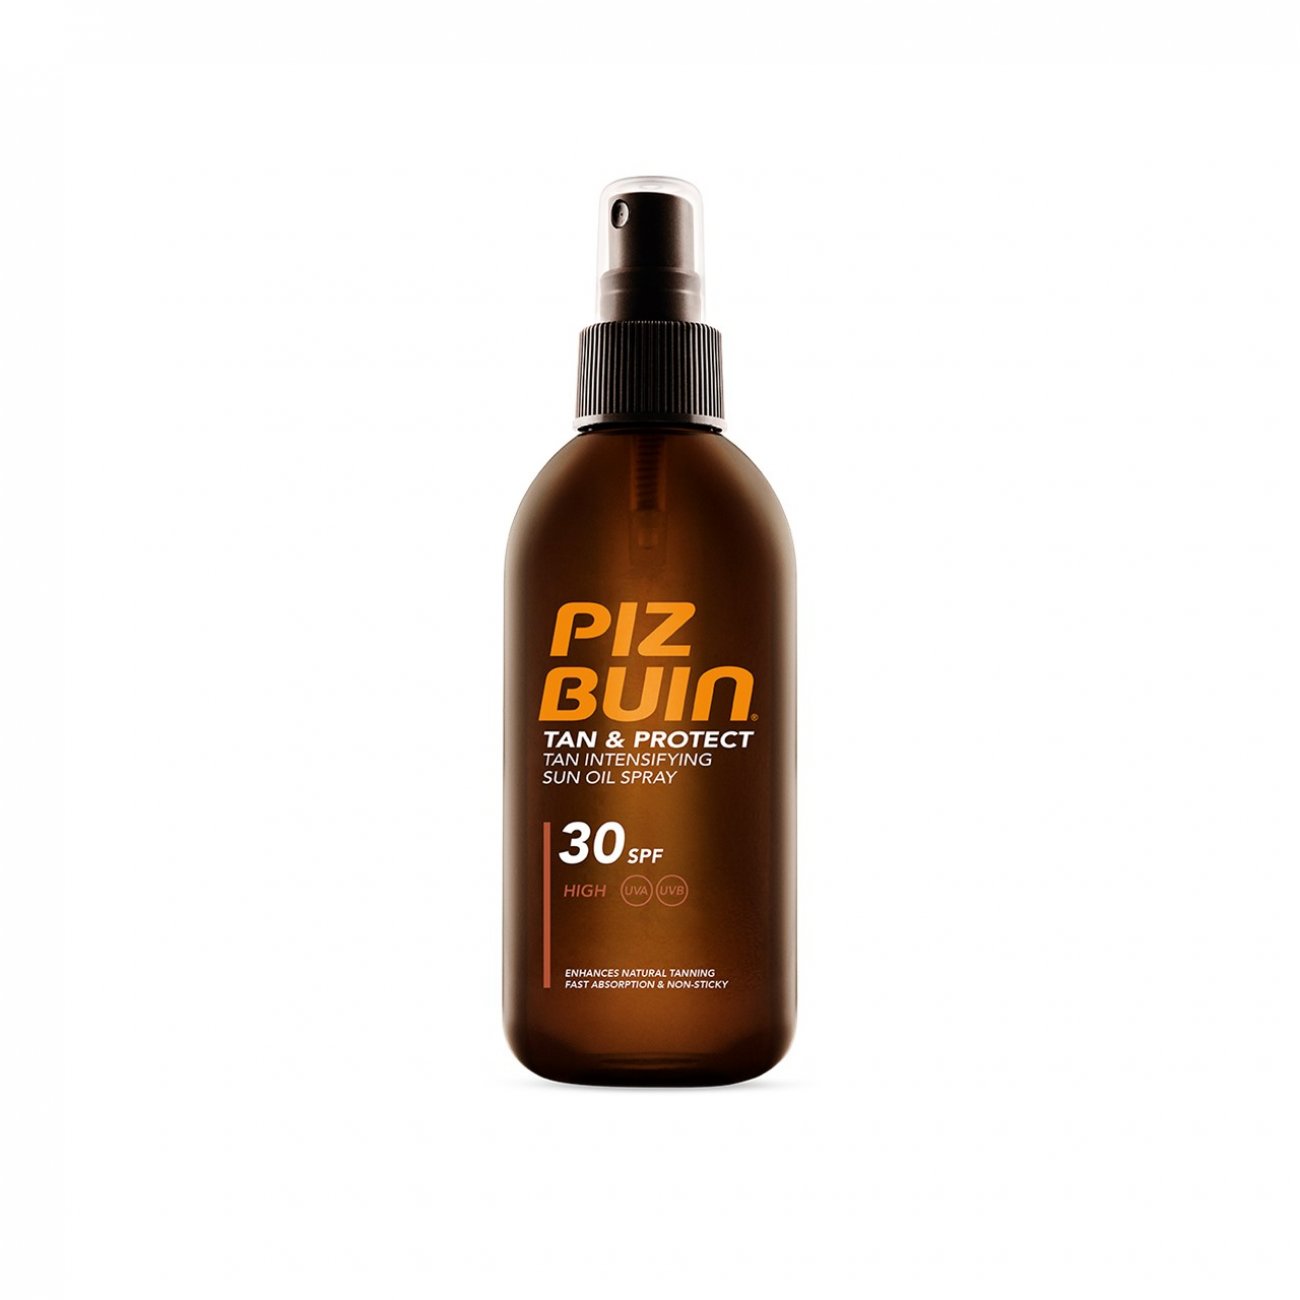 igen plast Stjerne Buy Piz Buin Tan & Protect Accelerating Oil Spray SPF30 150ml (5.07fl oz) ·  USA